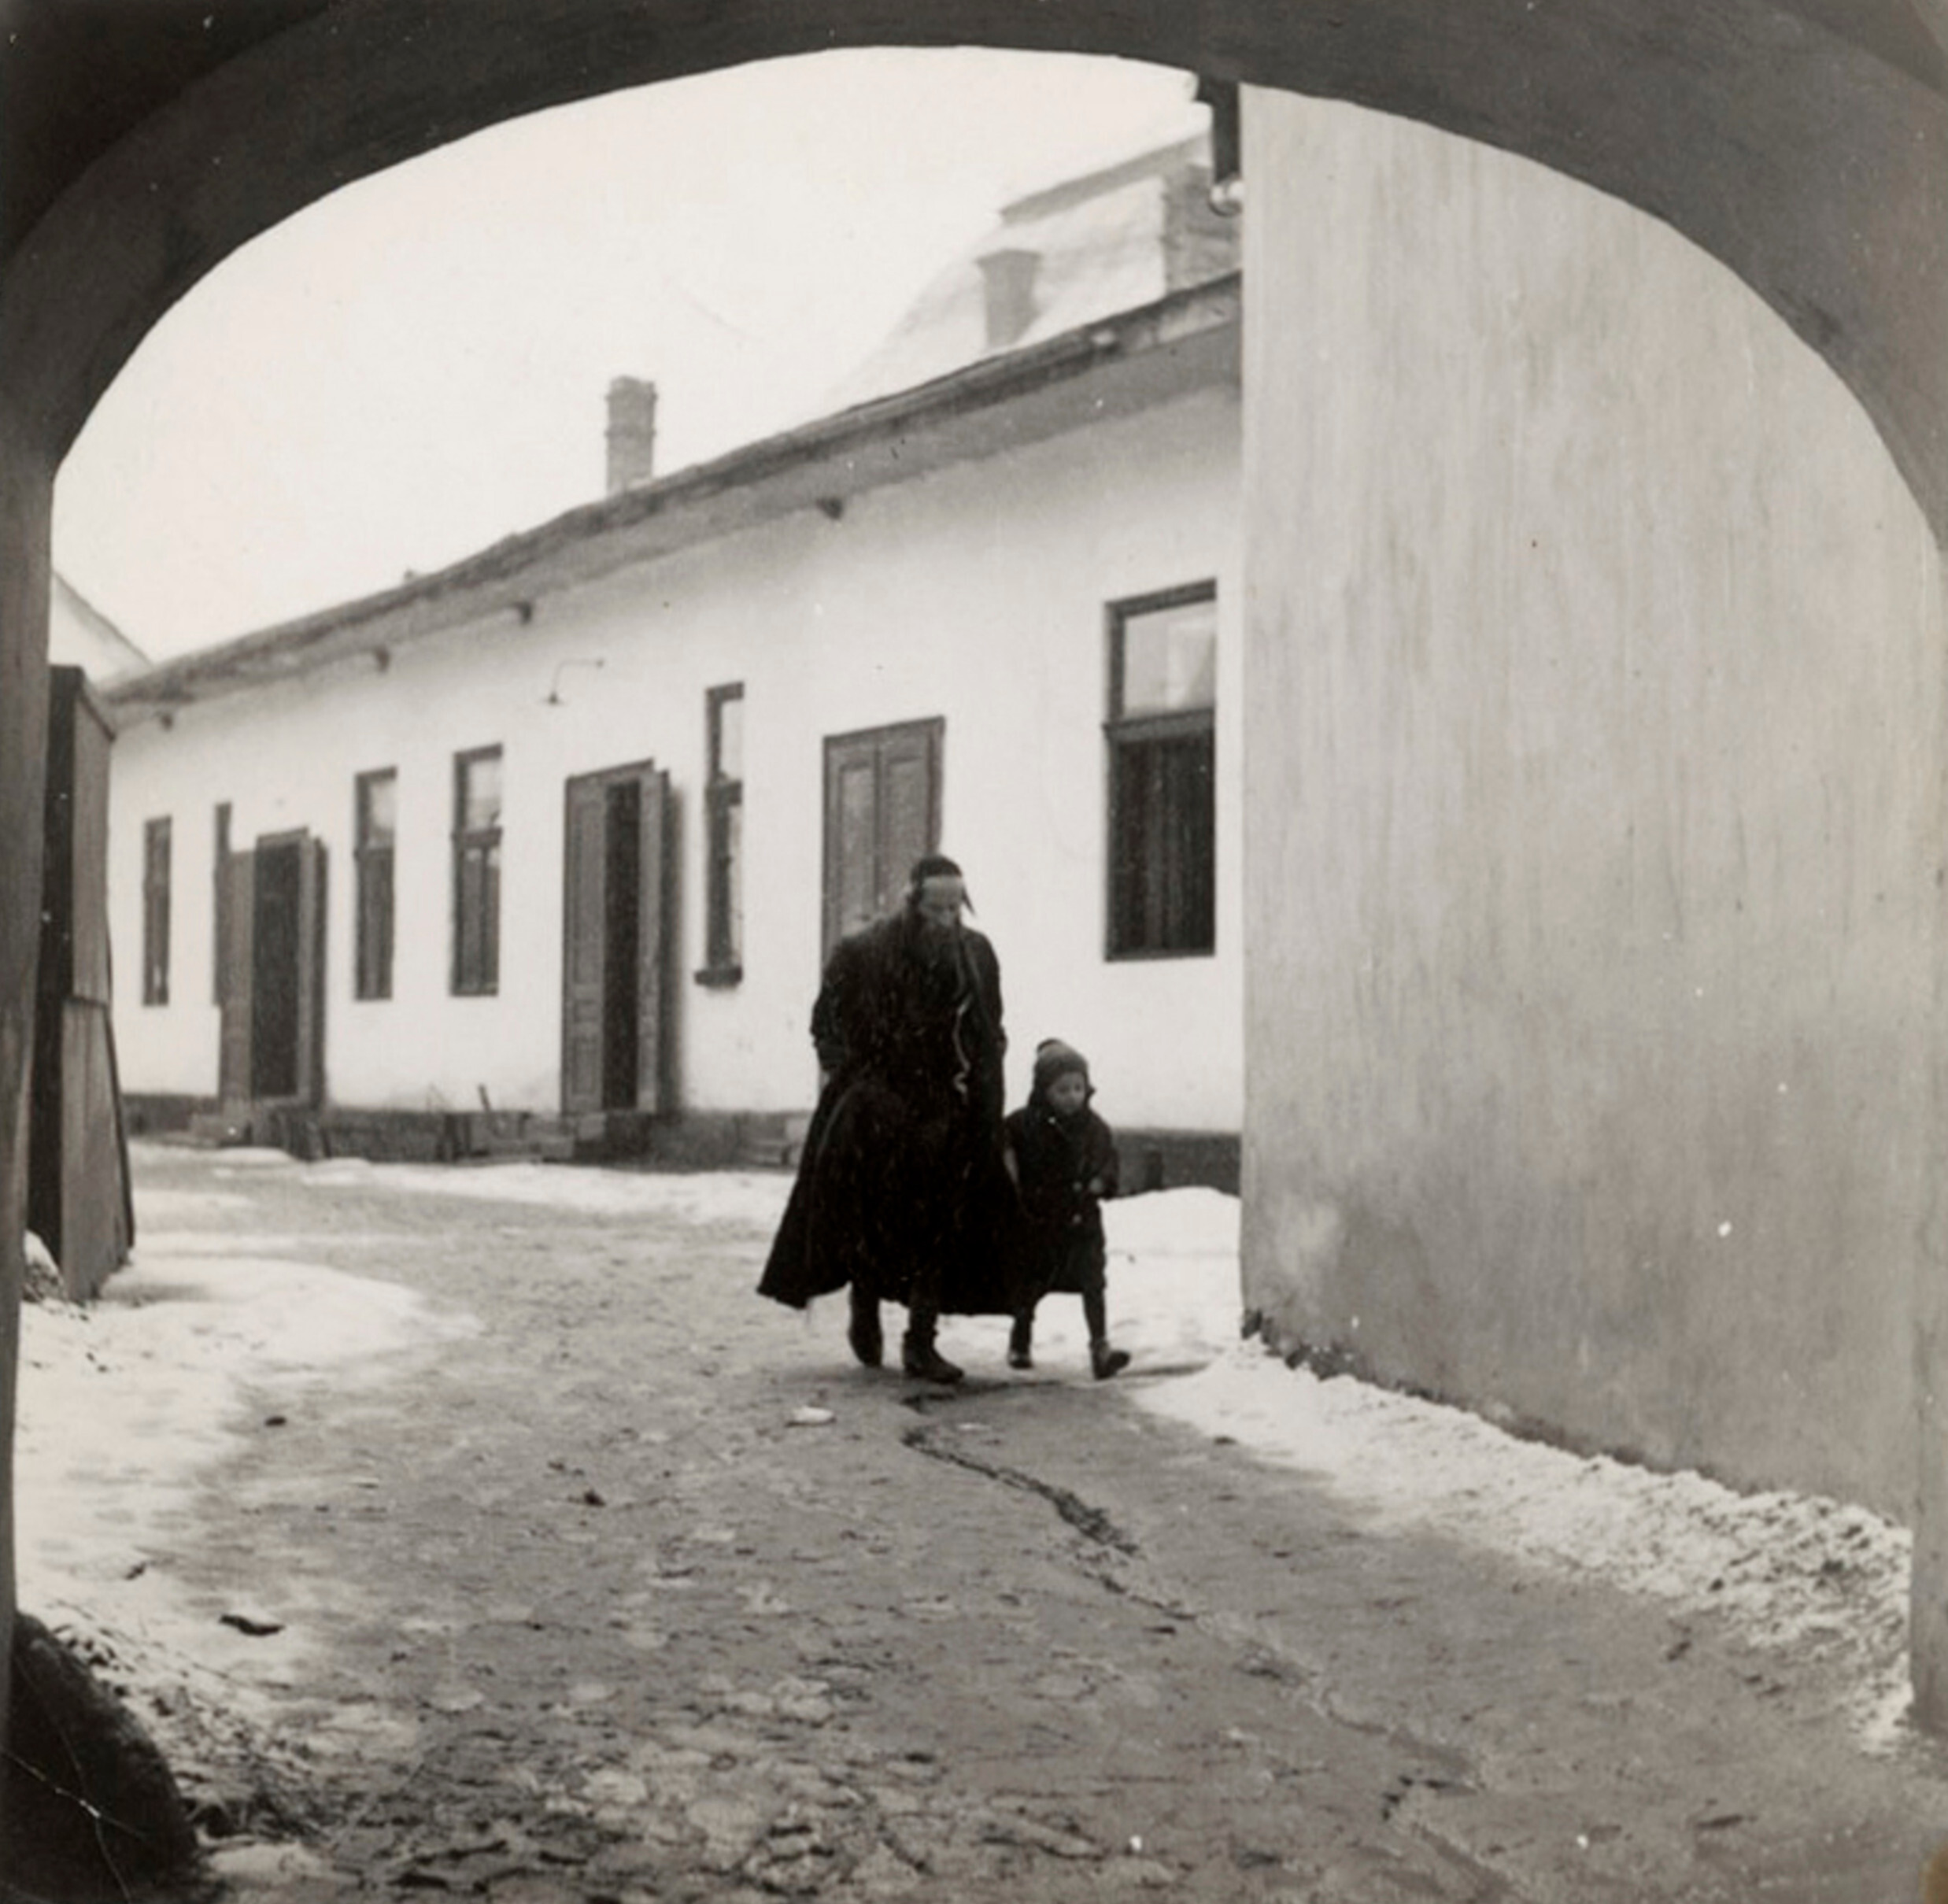 Отец ведет сына на первый день хедера (еврейская начальная школа), Мукачево, ок. 1935-38 гг. Фотограф Роман Вишняк